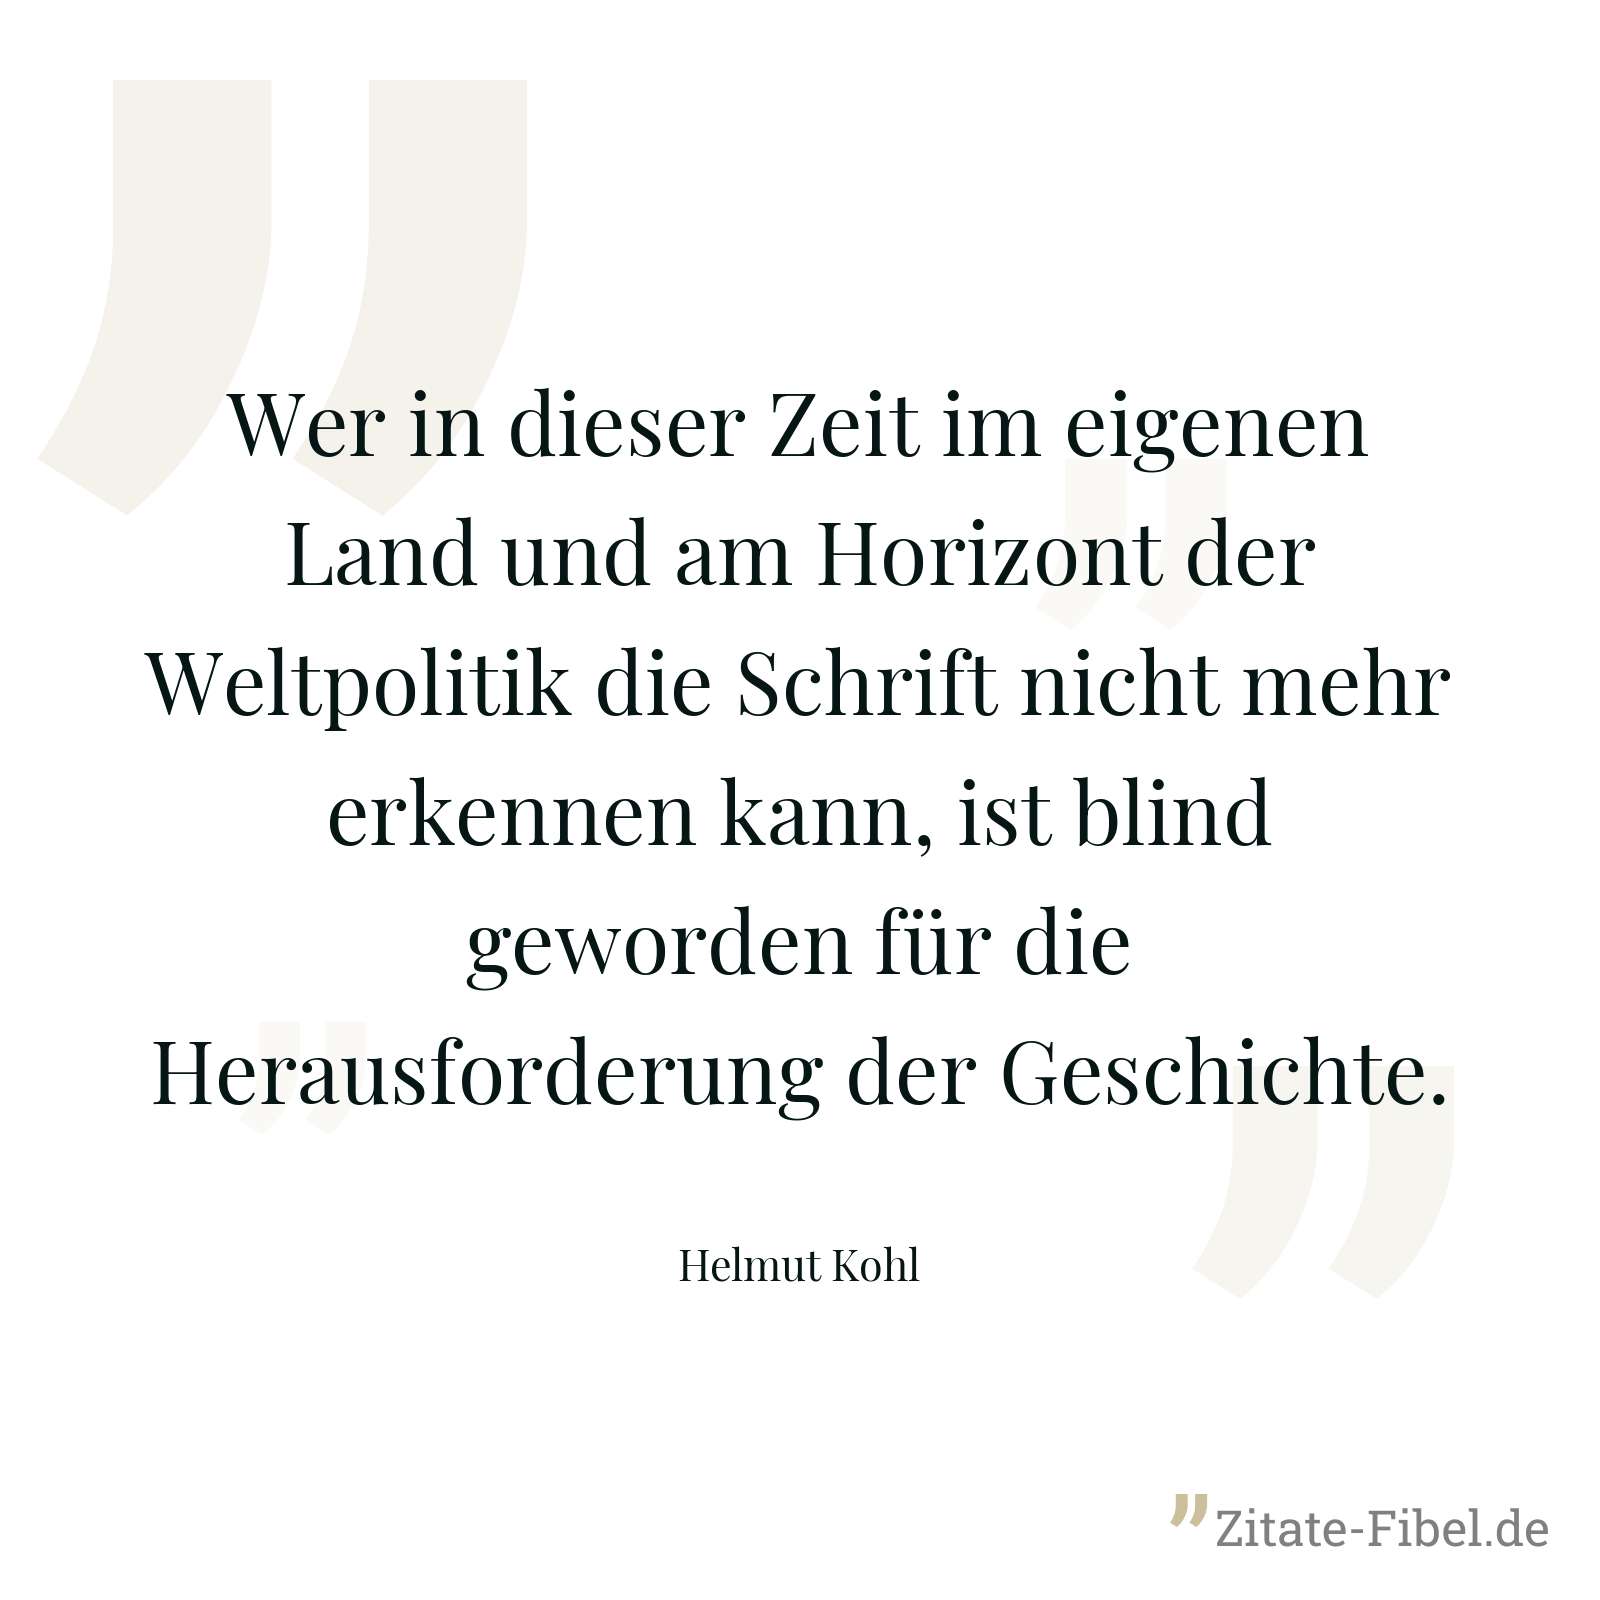 Wer in dieser Zeit im eigenen Land und am Horizont der Weltpolitik die Schrift nicht mehr erkennen kann, ist blind geworden für die Herausforderung der Geschichte. - Helmut Kohl